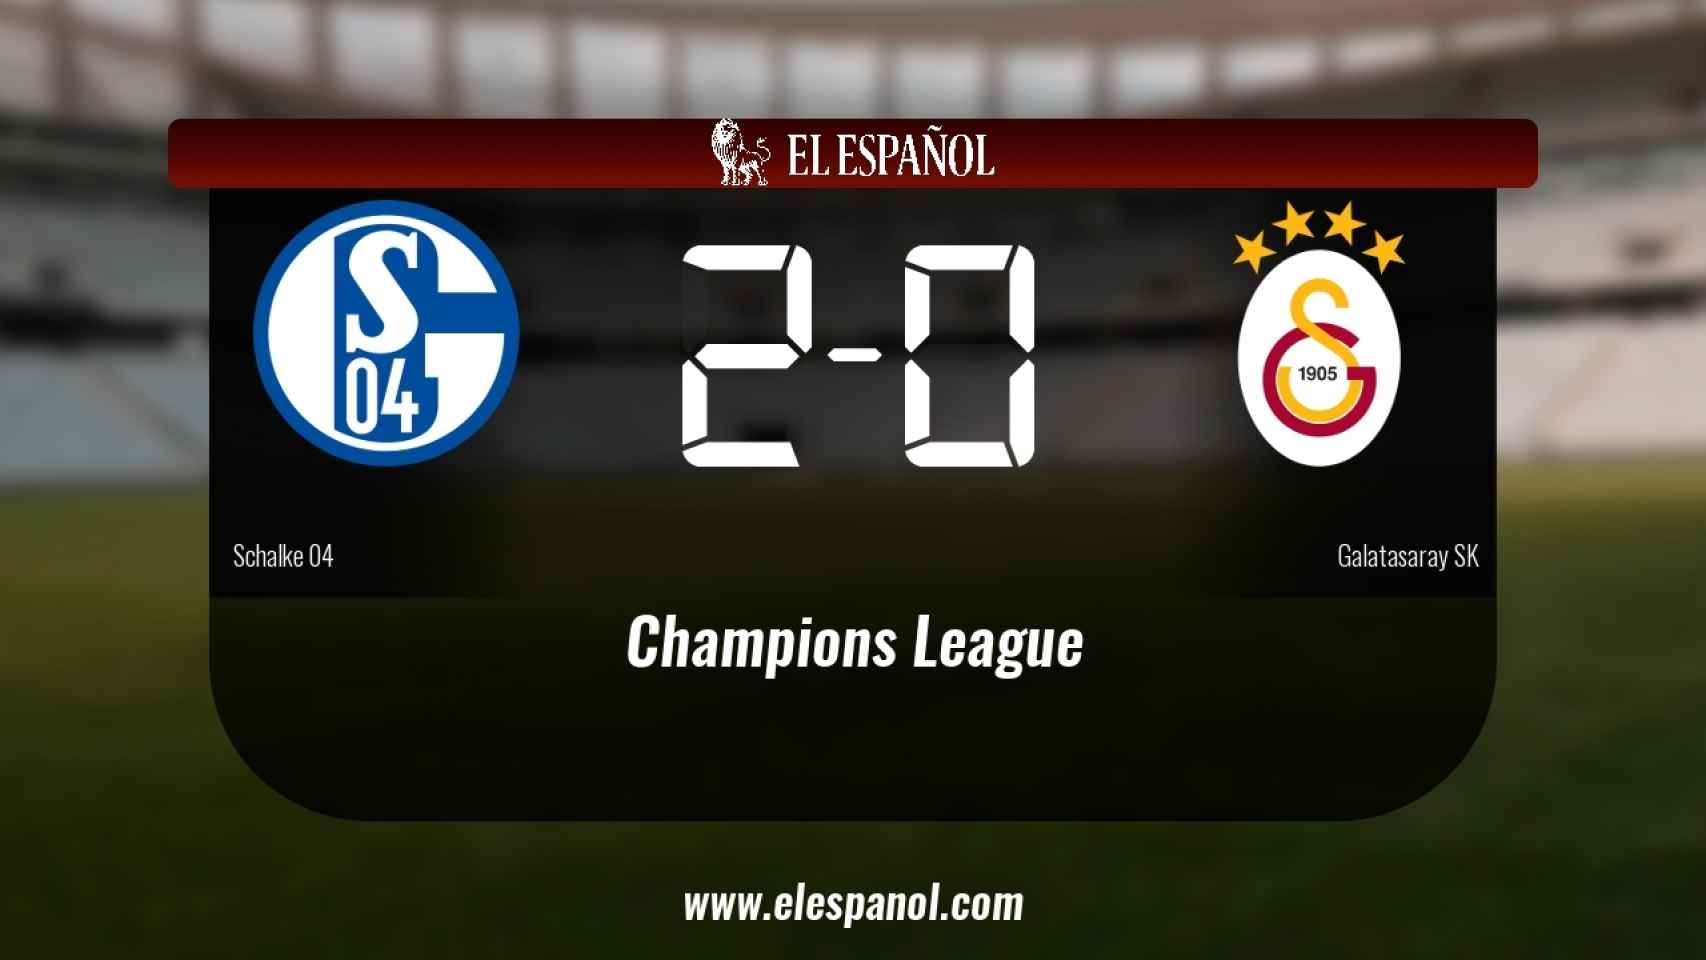 Victoria 2-0 del Schalke 04 frente al Galatasaray SK